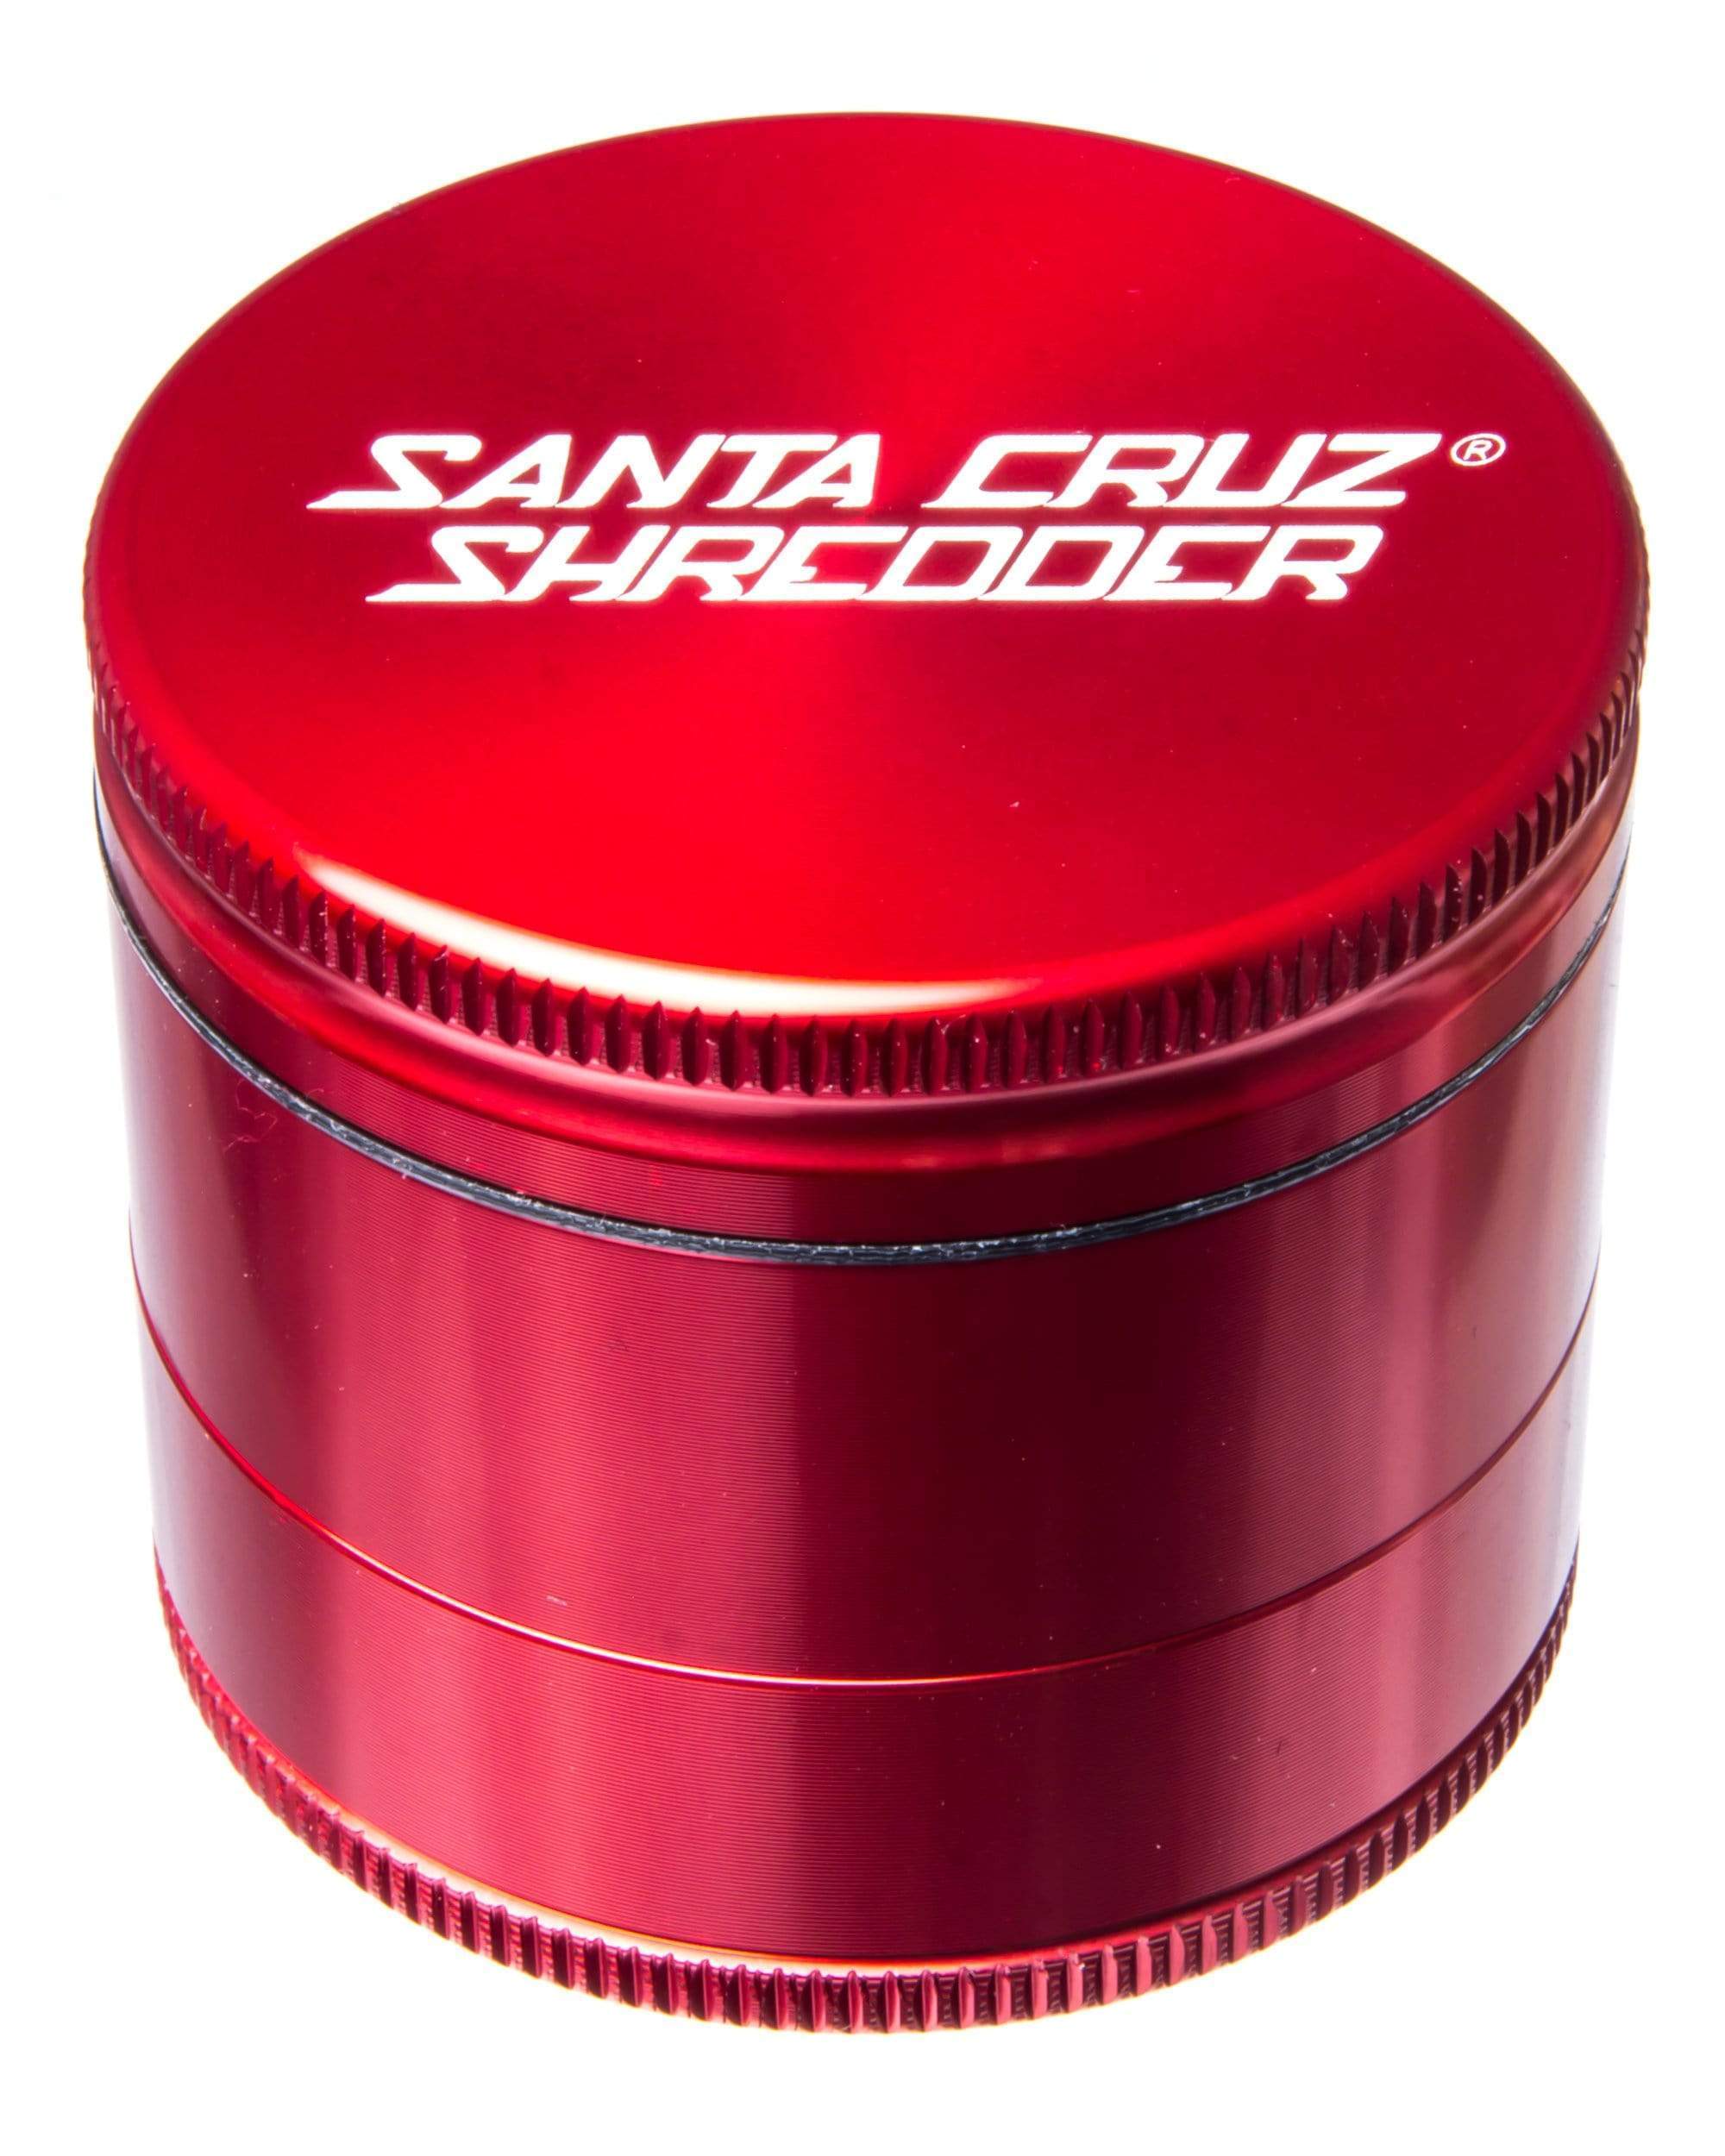 Santa Cruz Shredder Red grinder 587600000000